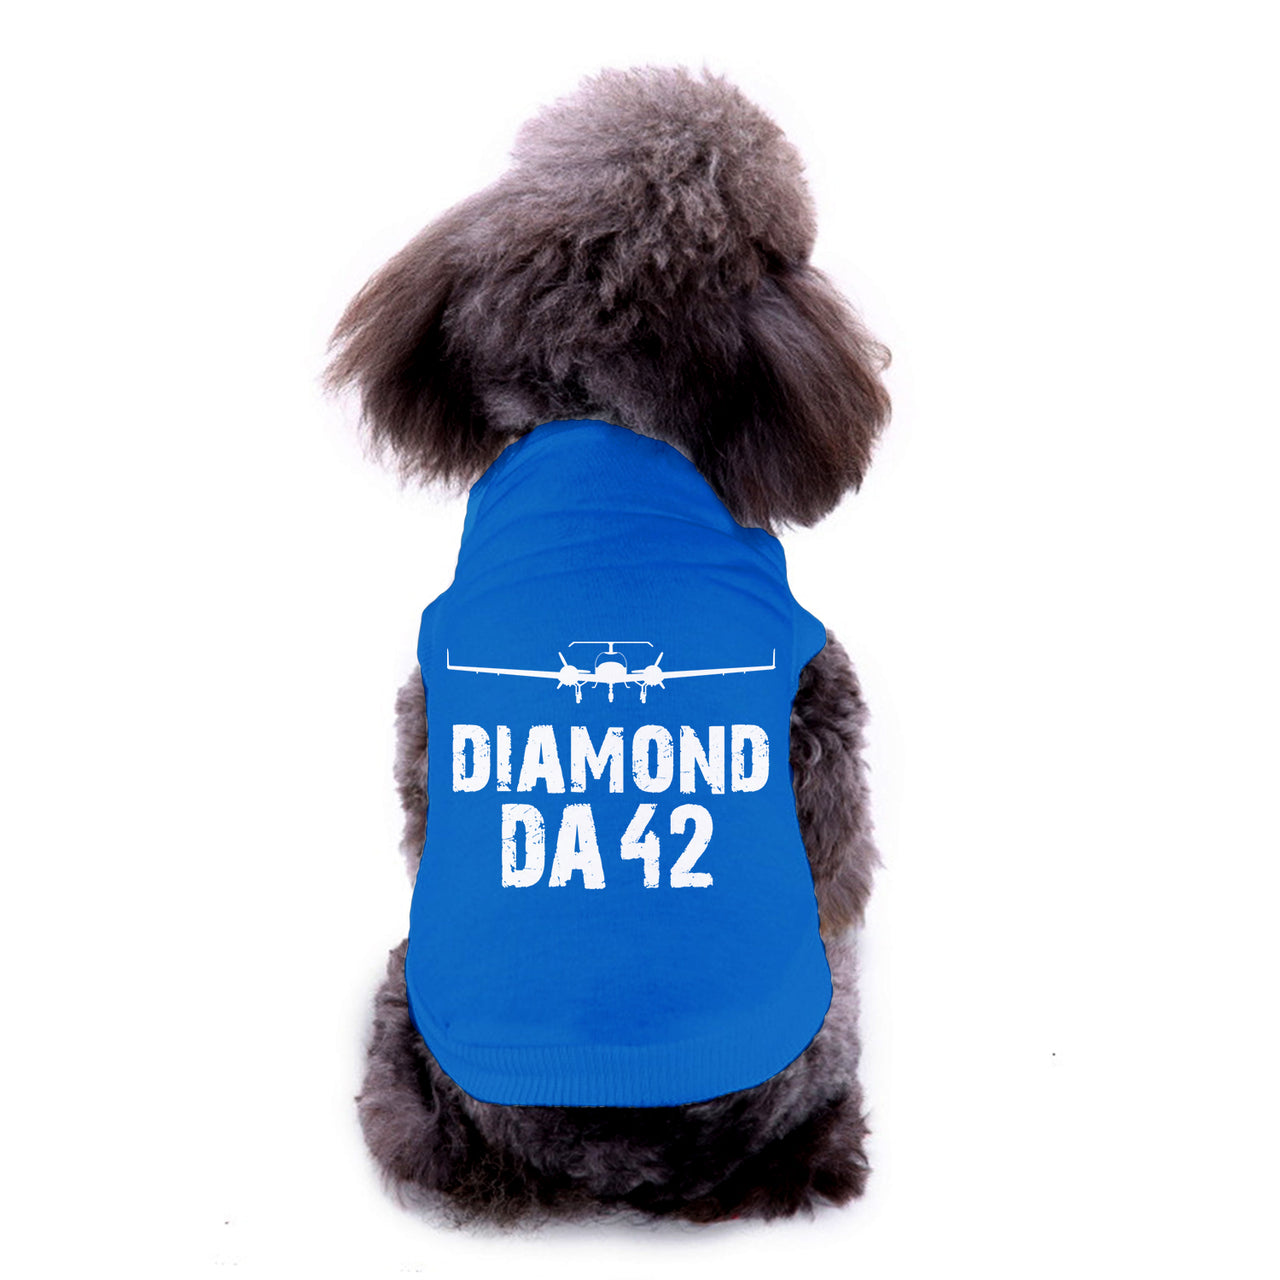 Diamond DA42 & Plane Designed Dog Pet Vests